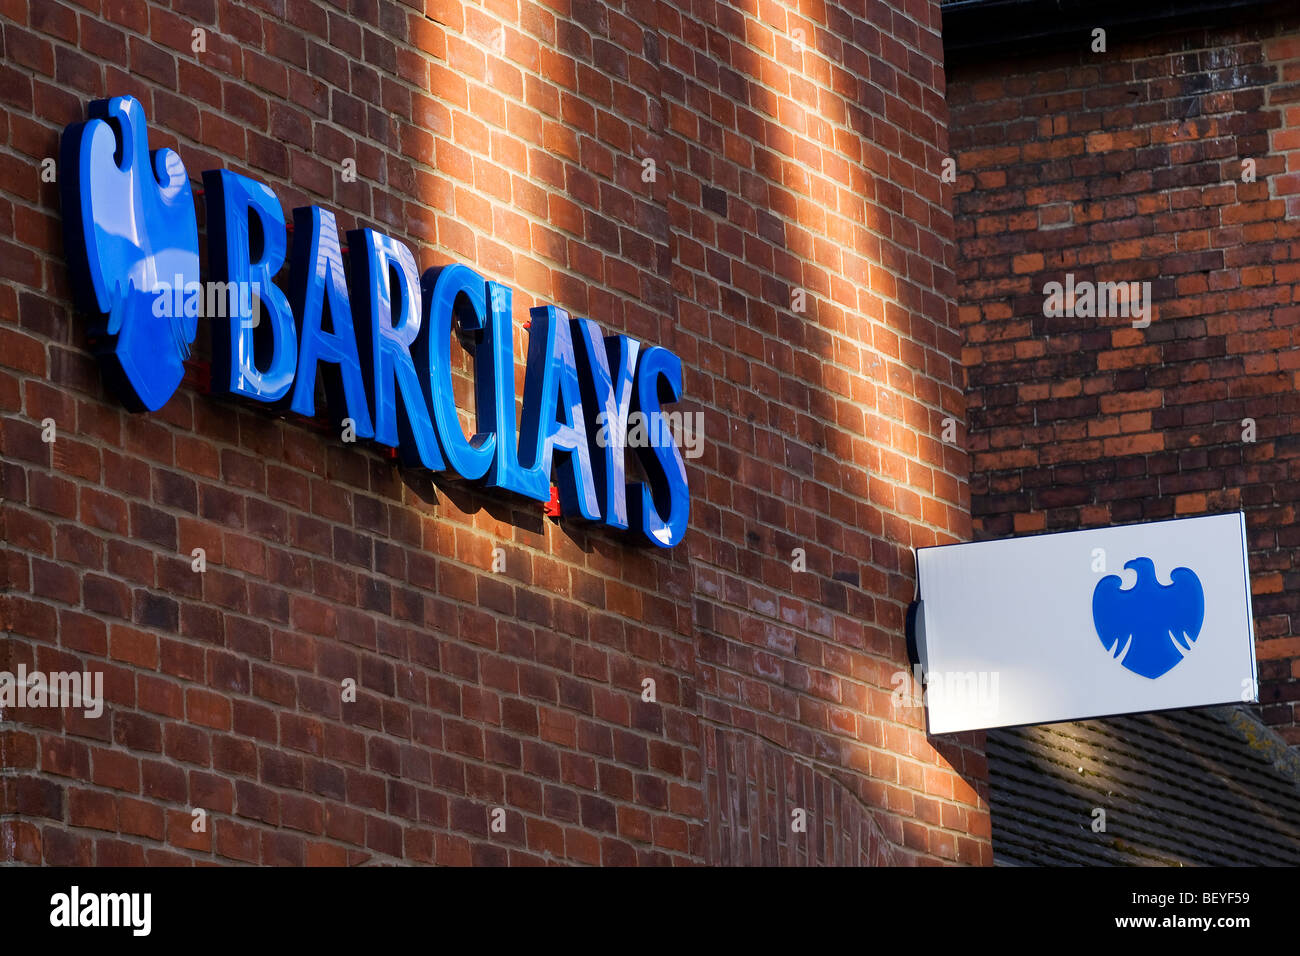 barclays bank signage Stock Photo